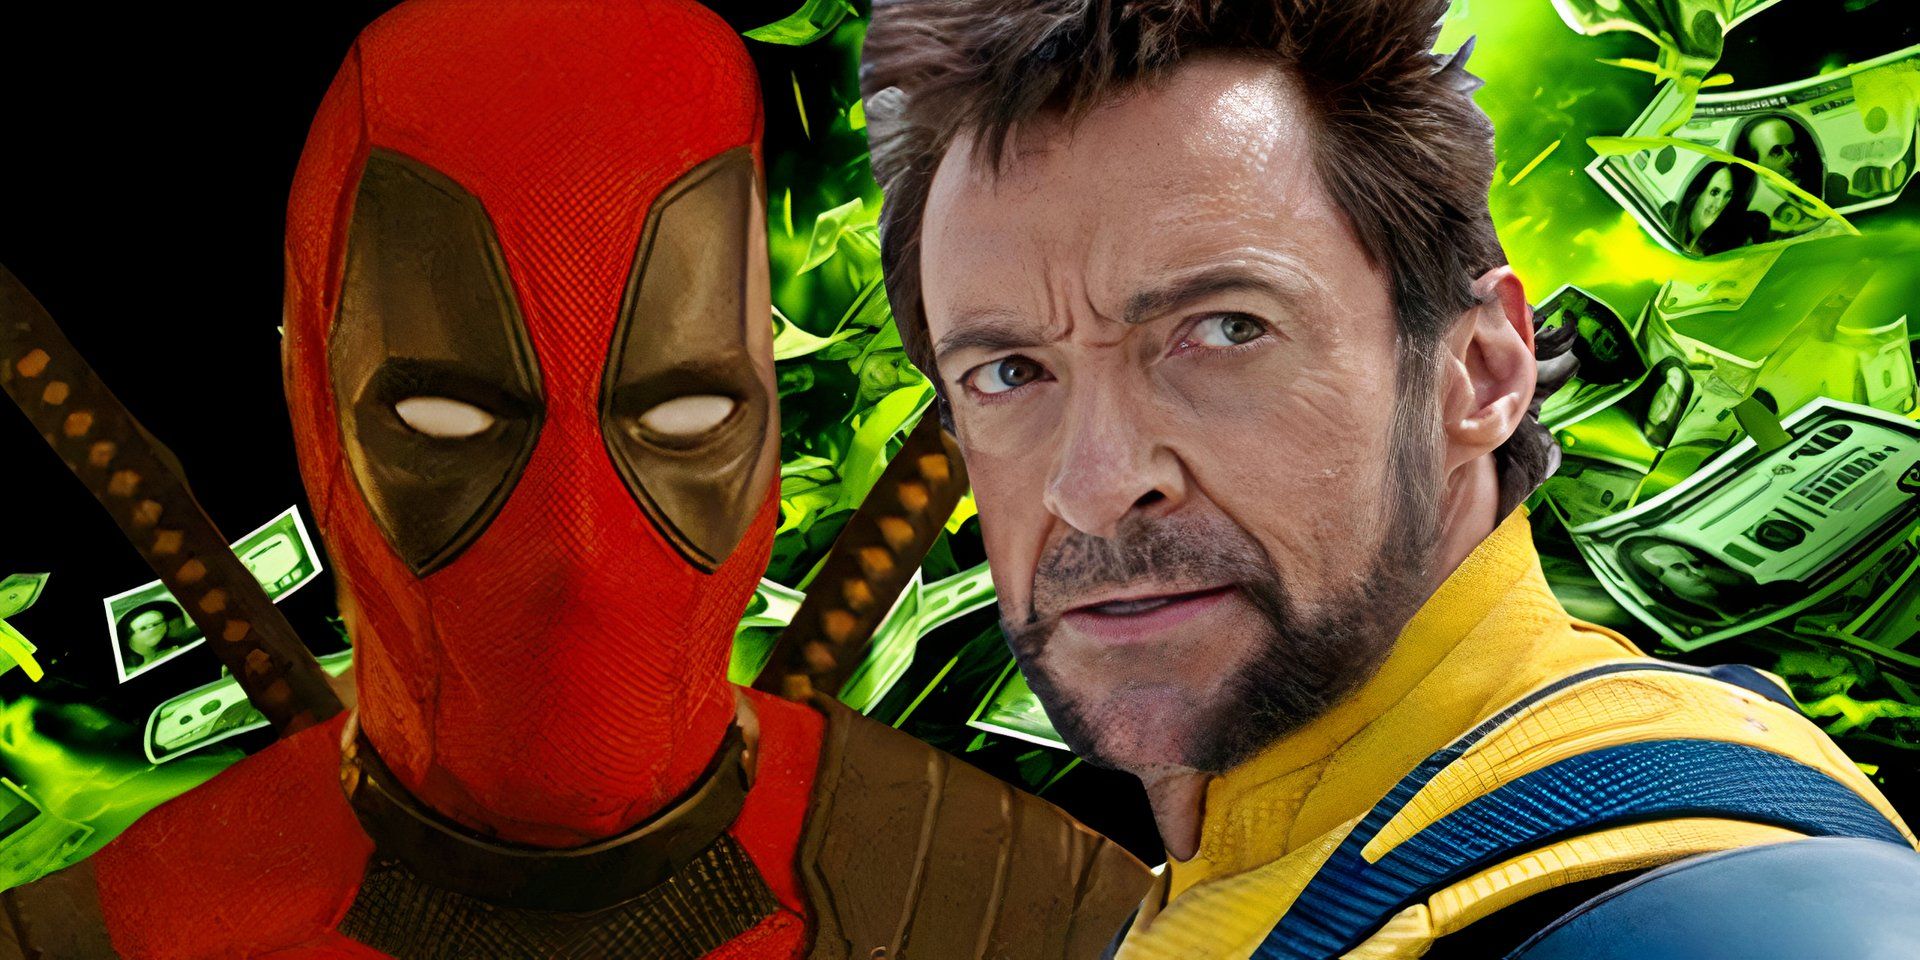 Las posibilidades de Deadpool y Wolverine de alcanzar los mil millones de dólares se disparan después de romper una tendencia de franquicia